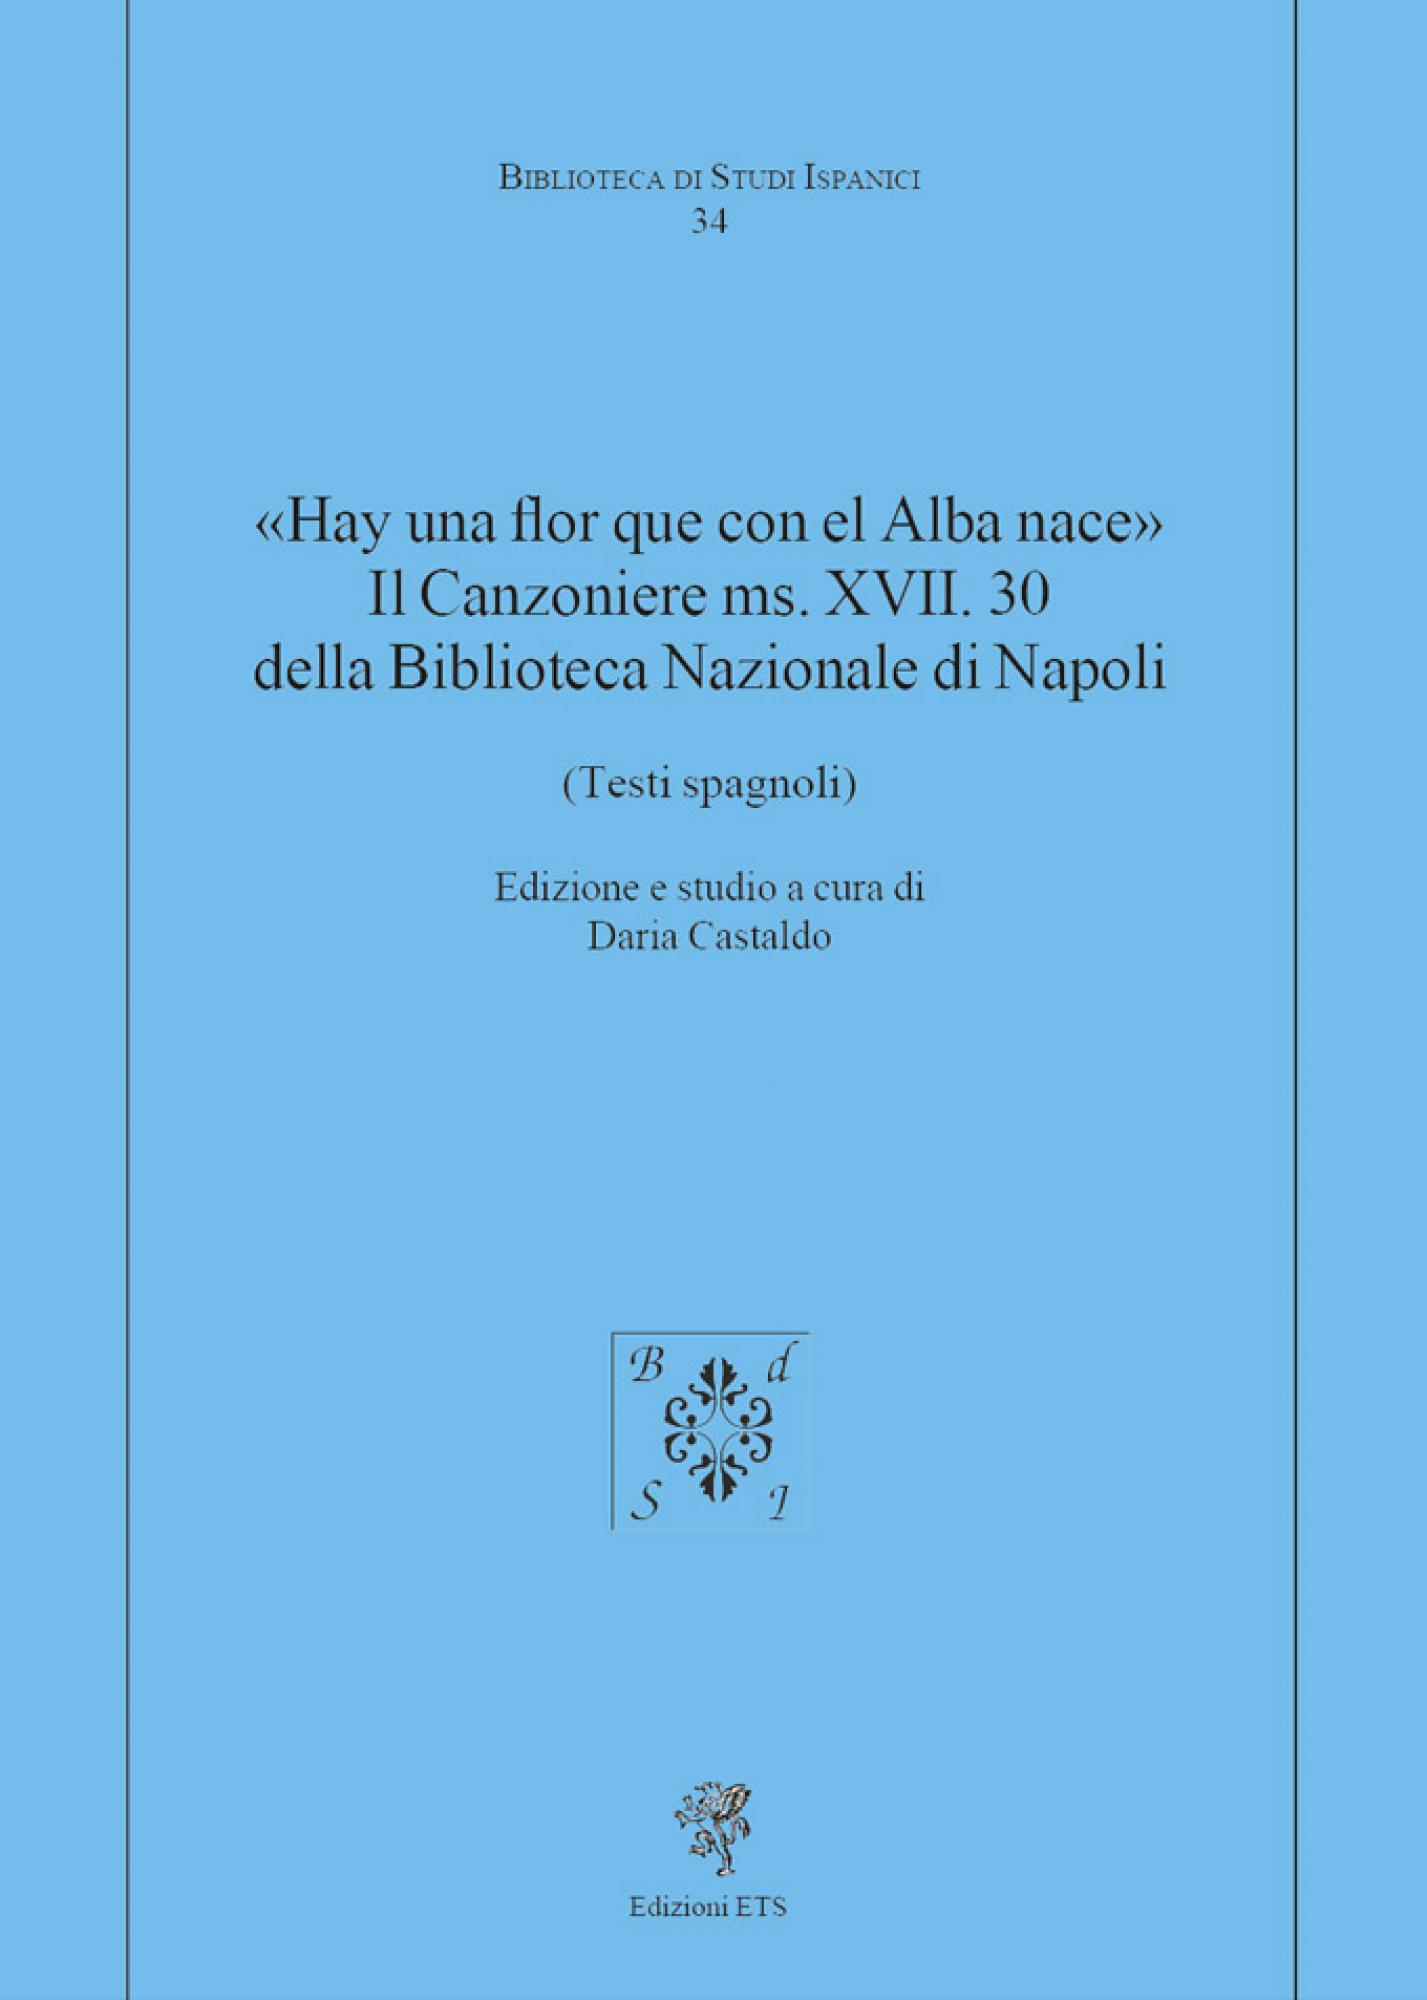 «Hay una flor que con el Alba nace». Il Canzoniere ms. XVII. 30 della Biblioteca Nazionale di Napoli.(Testi spagnoli)